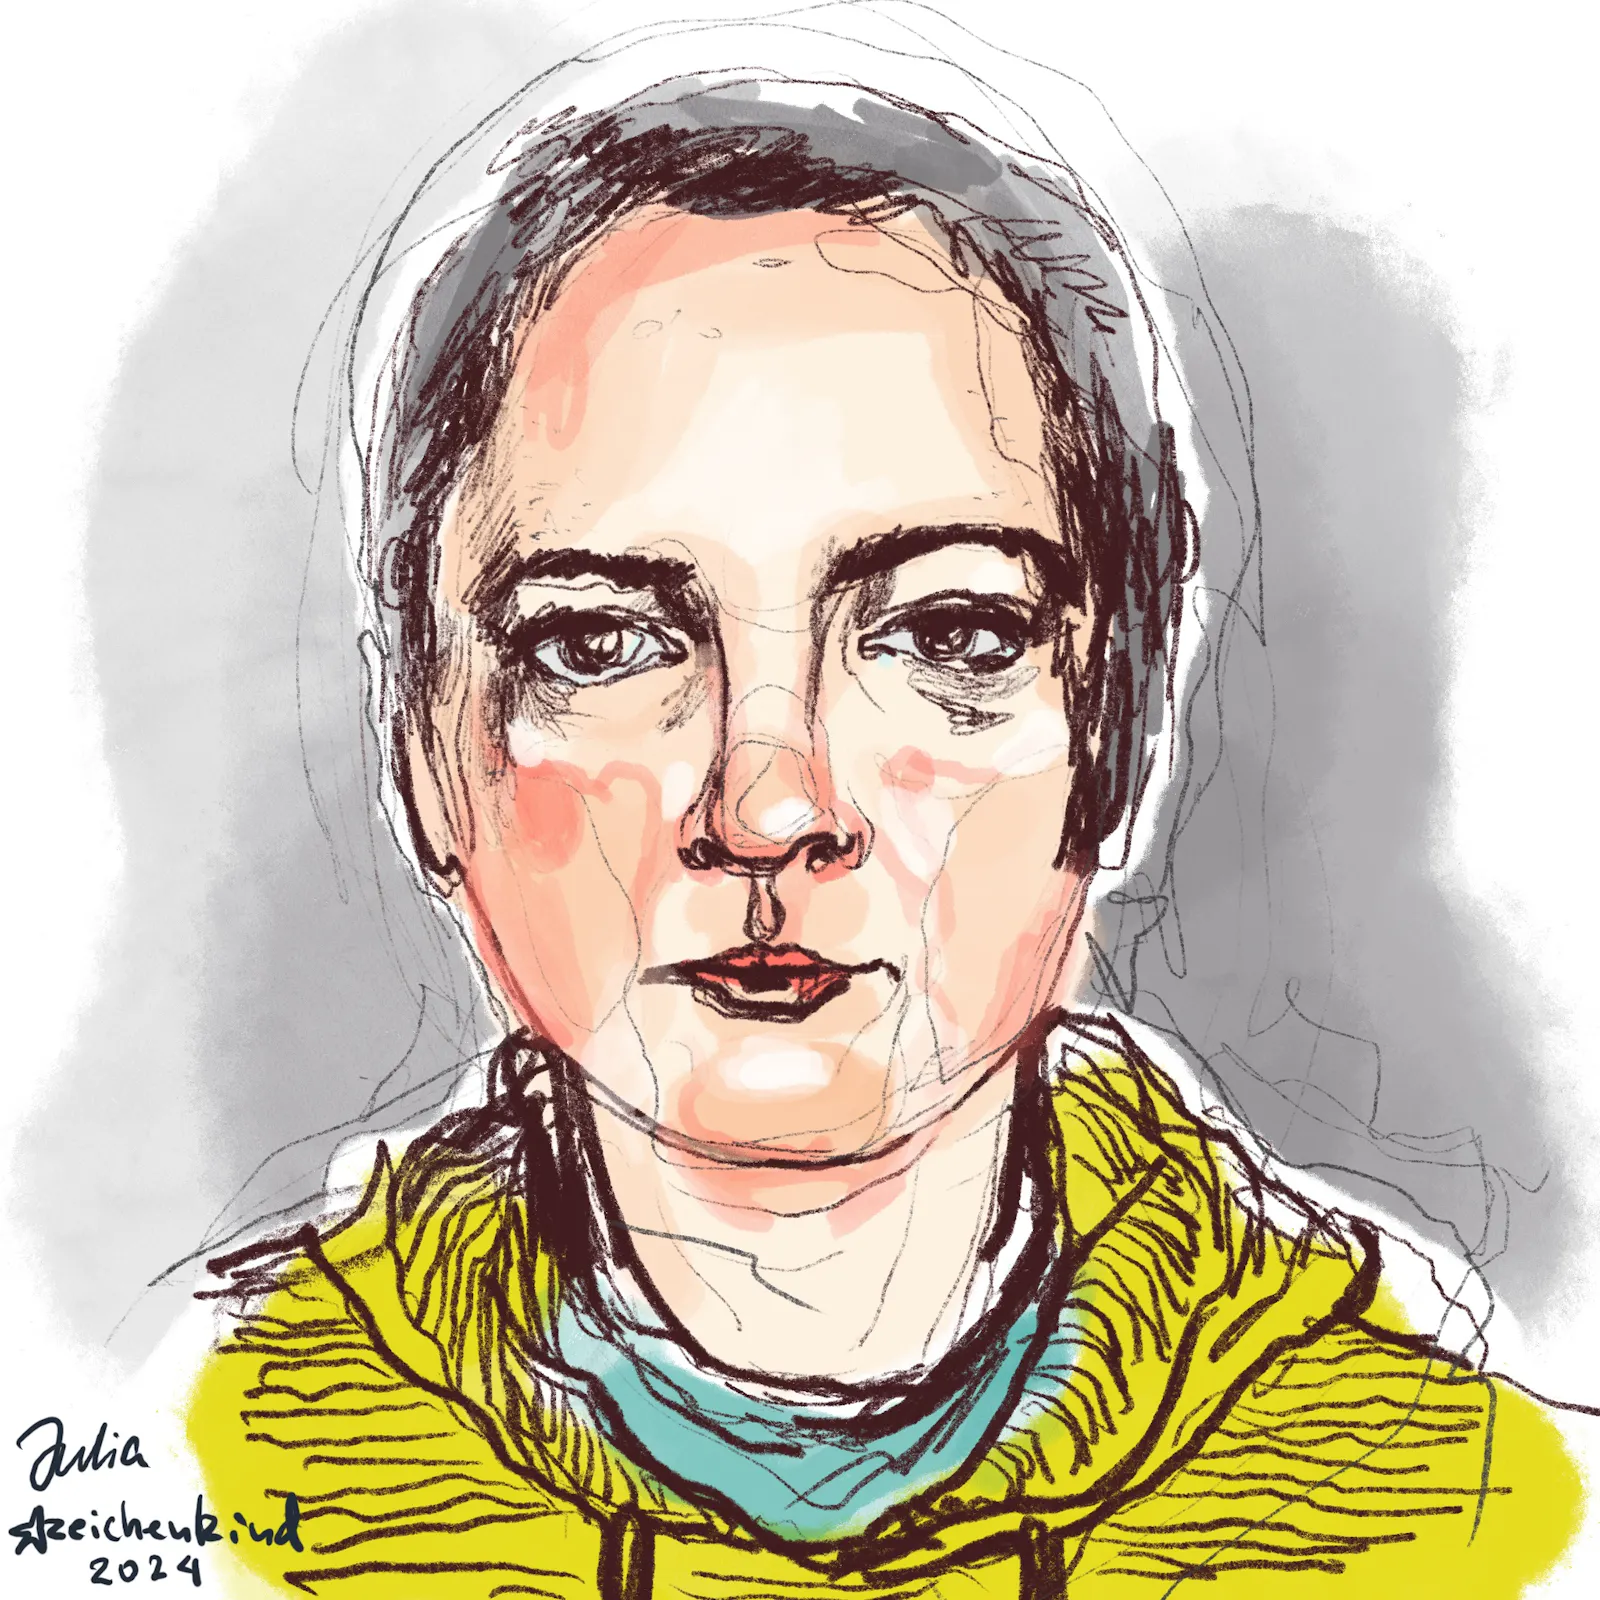 Eine ältere Frau mit einem runden, trurigen Gesicht. Gelber Pulli. Selbstportrait von Julia Zeichenkind. Farbige Strichzeichnung.